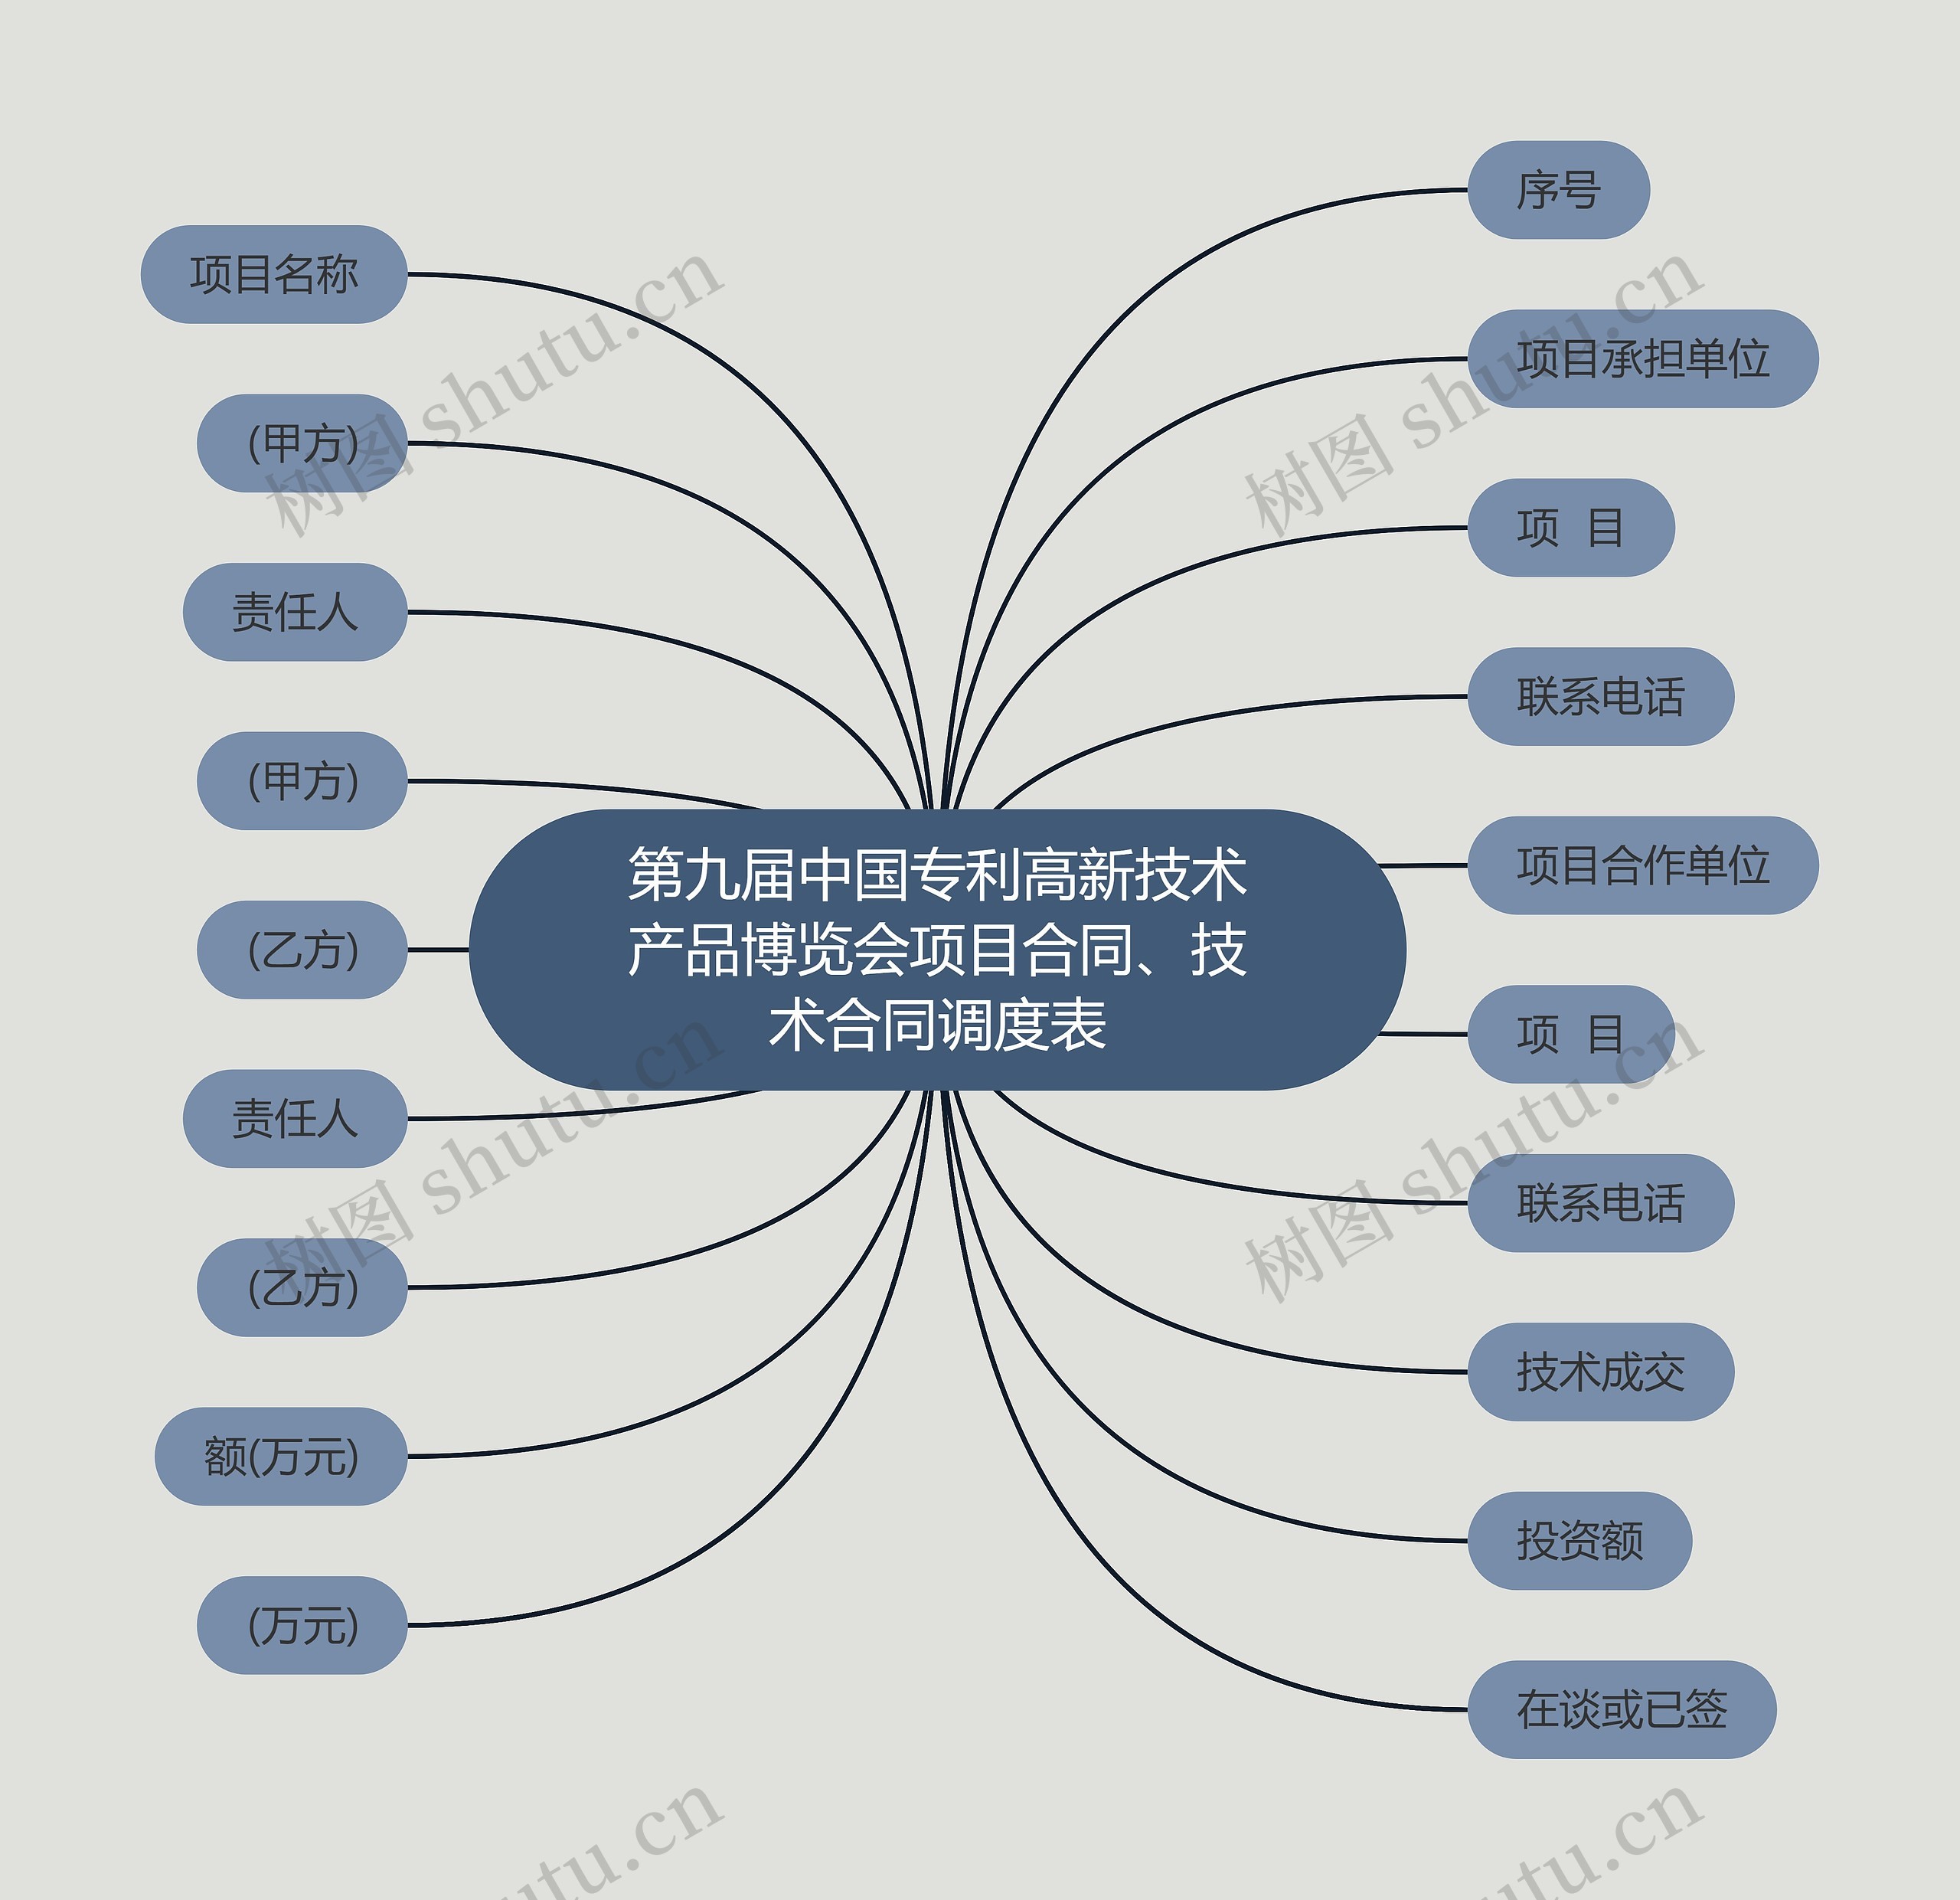 第九届中国专利高新技术产品博览会项目合同、技术合同调度表思维导图